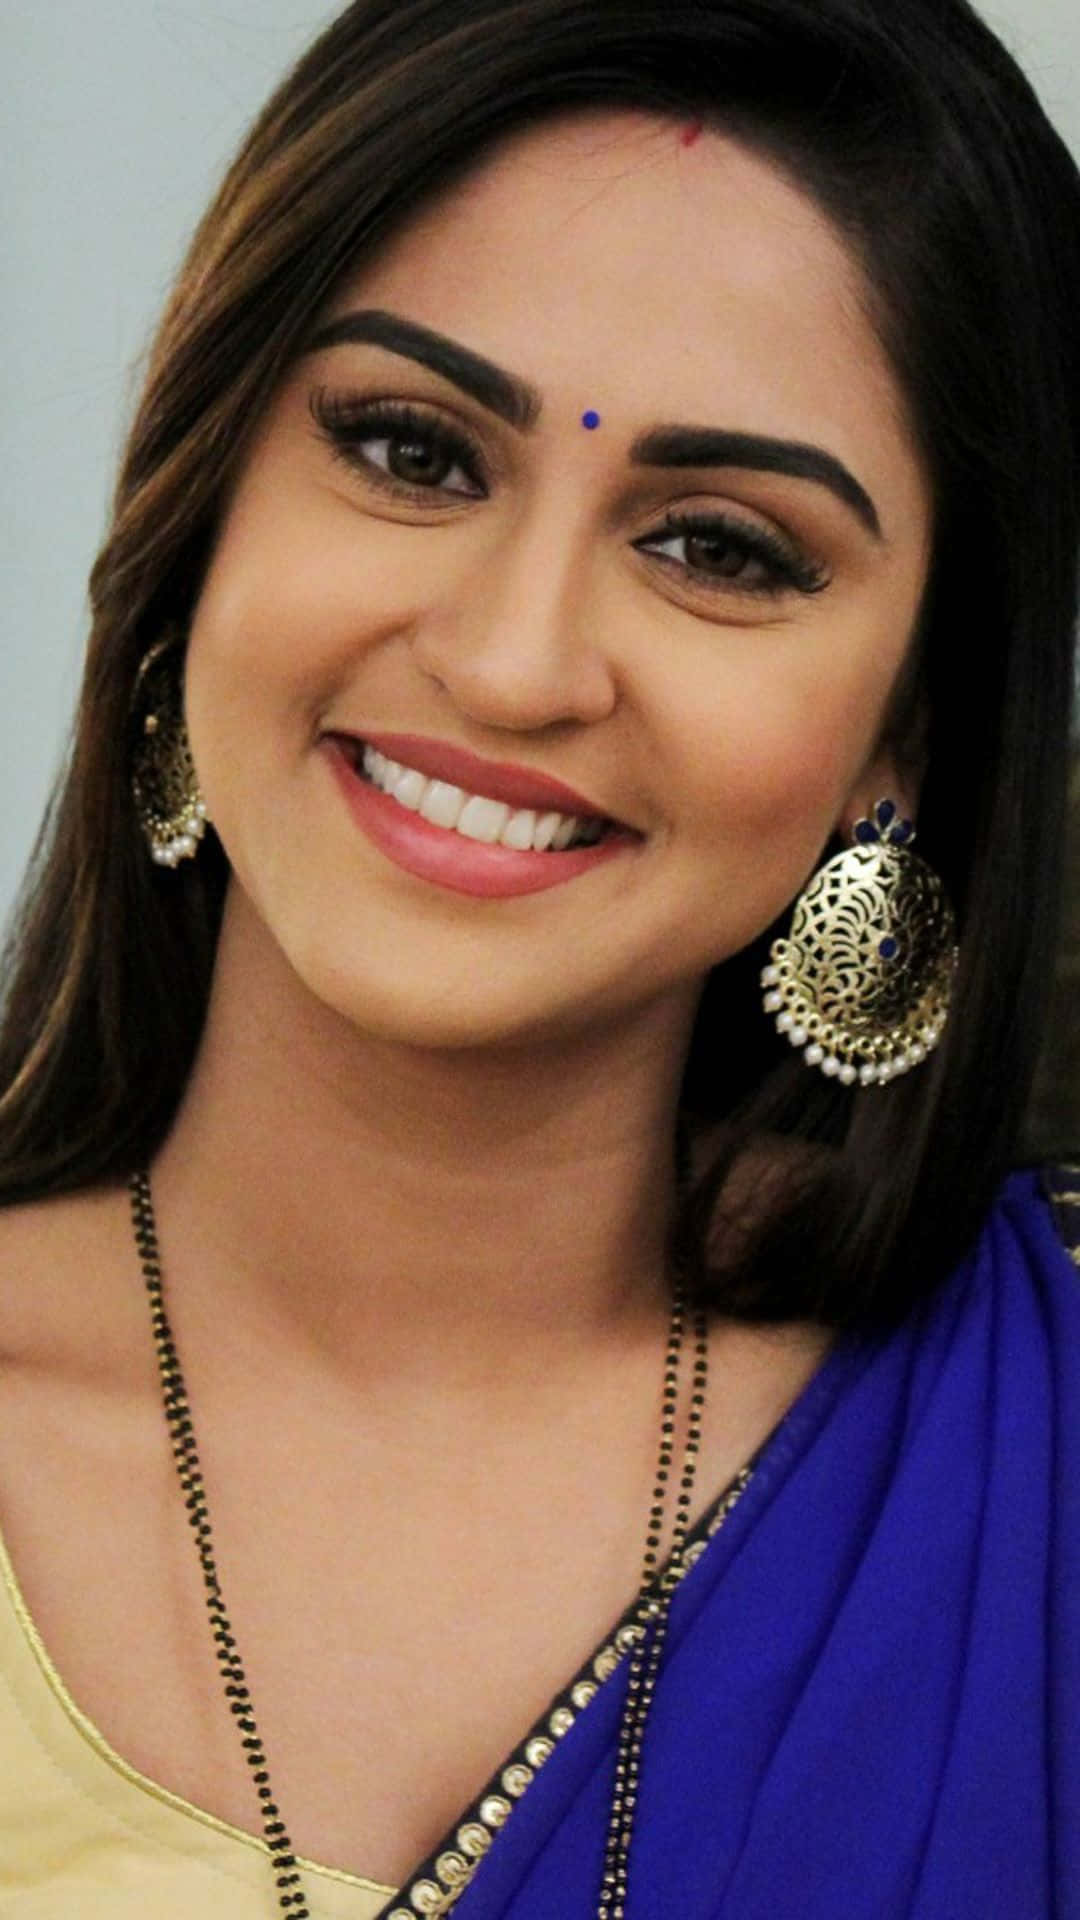 Eineschöne Frau In Einem Blauen Sari, Die Lächelt.